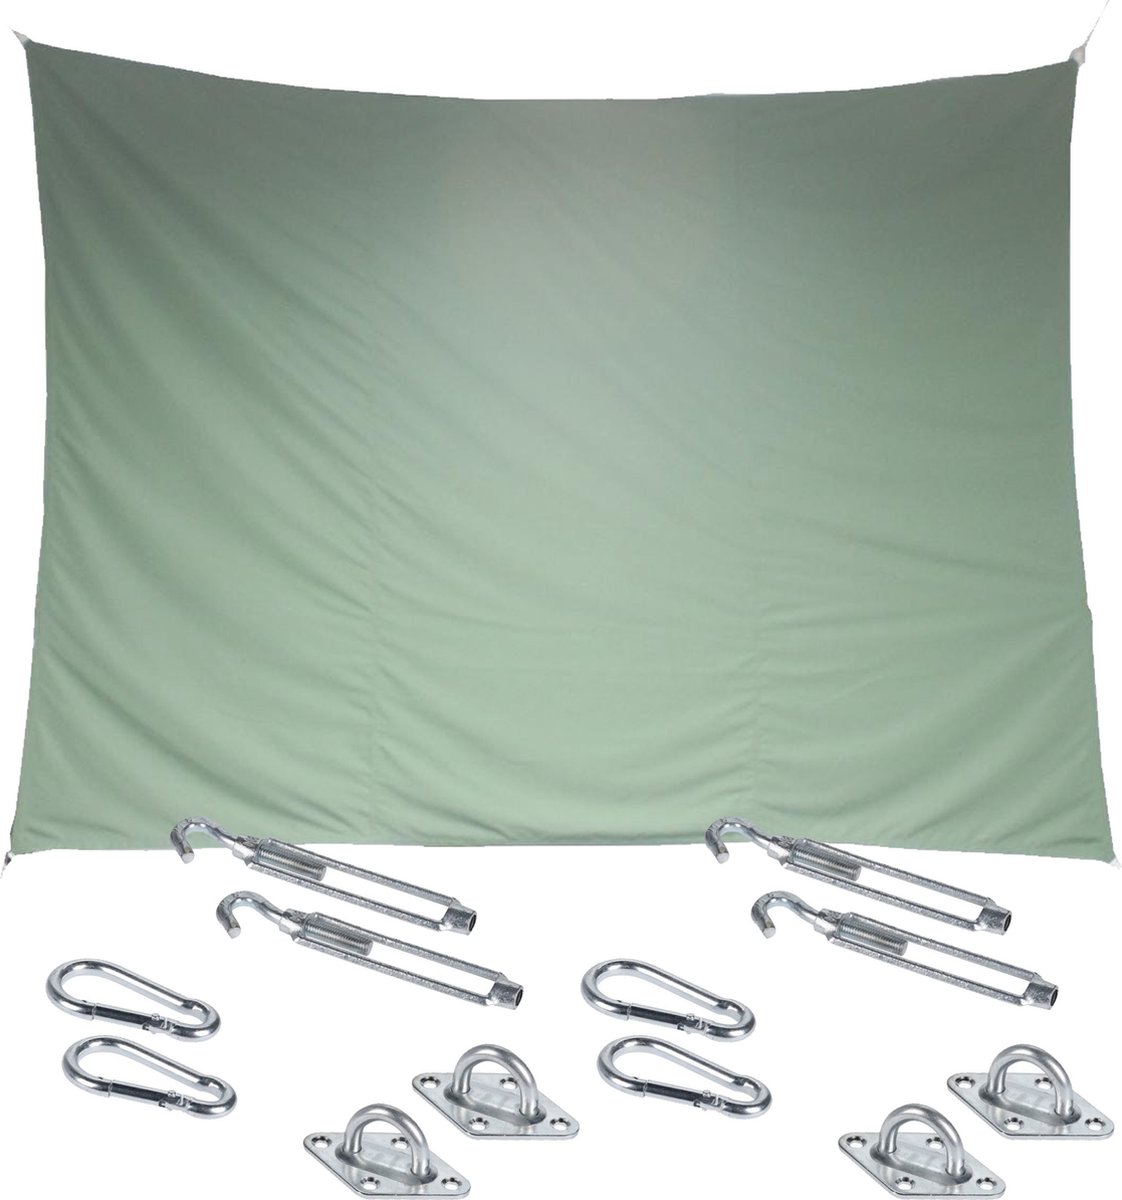 Premium kwaliteit schaduwdoek/zonnescherm Shae rechthoekig groen 3 x 4 meter - inclusief bevestiging haken set